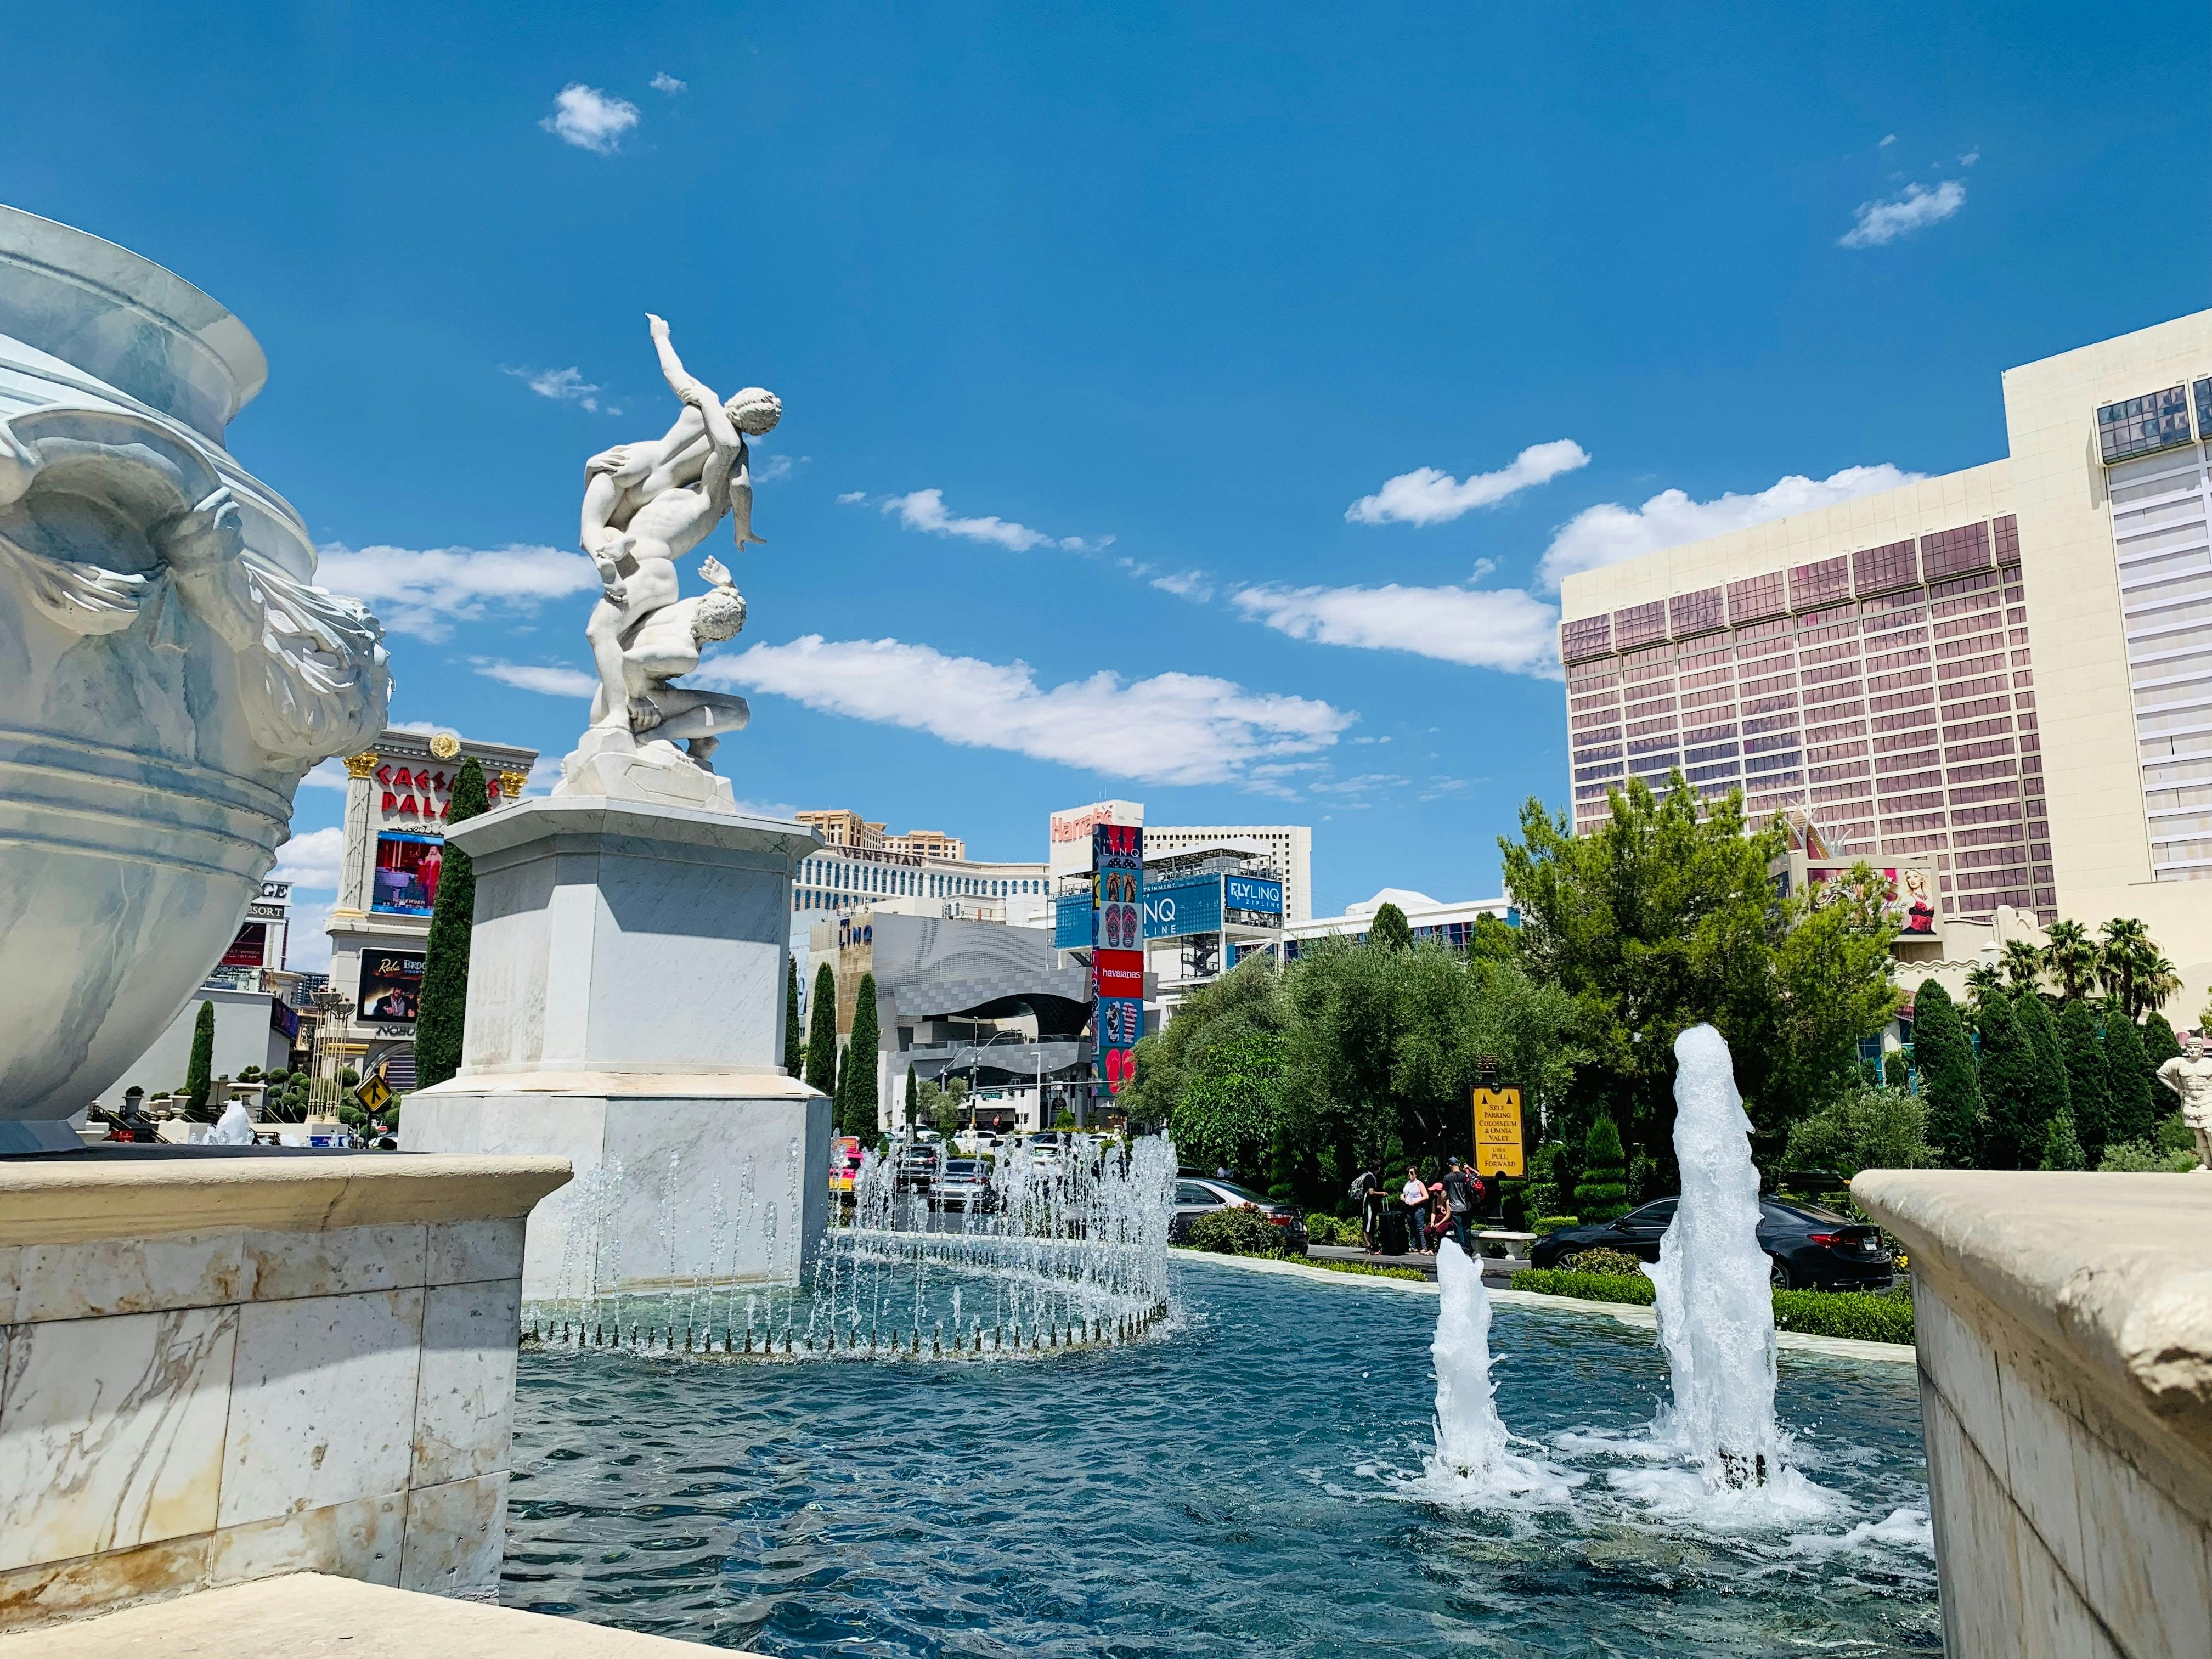 Bellagio fountains in Las Vegas